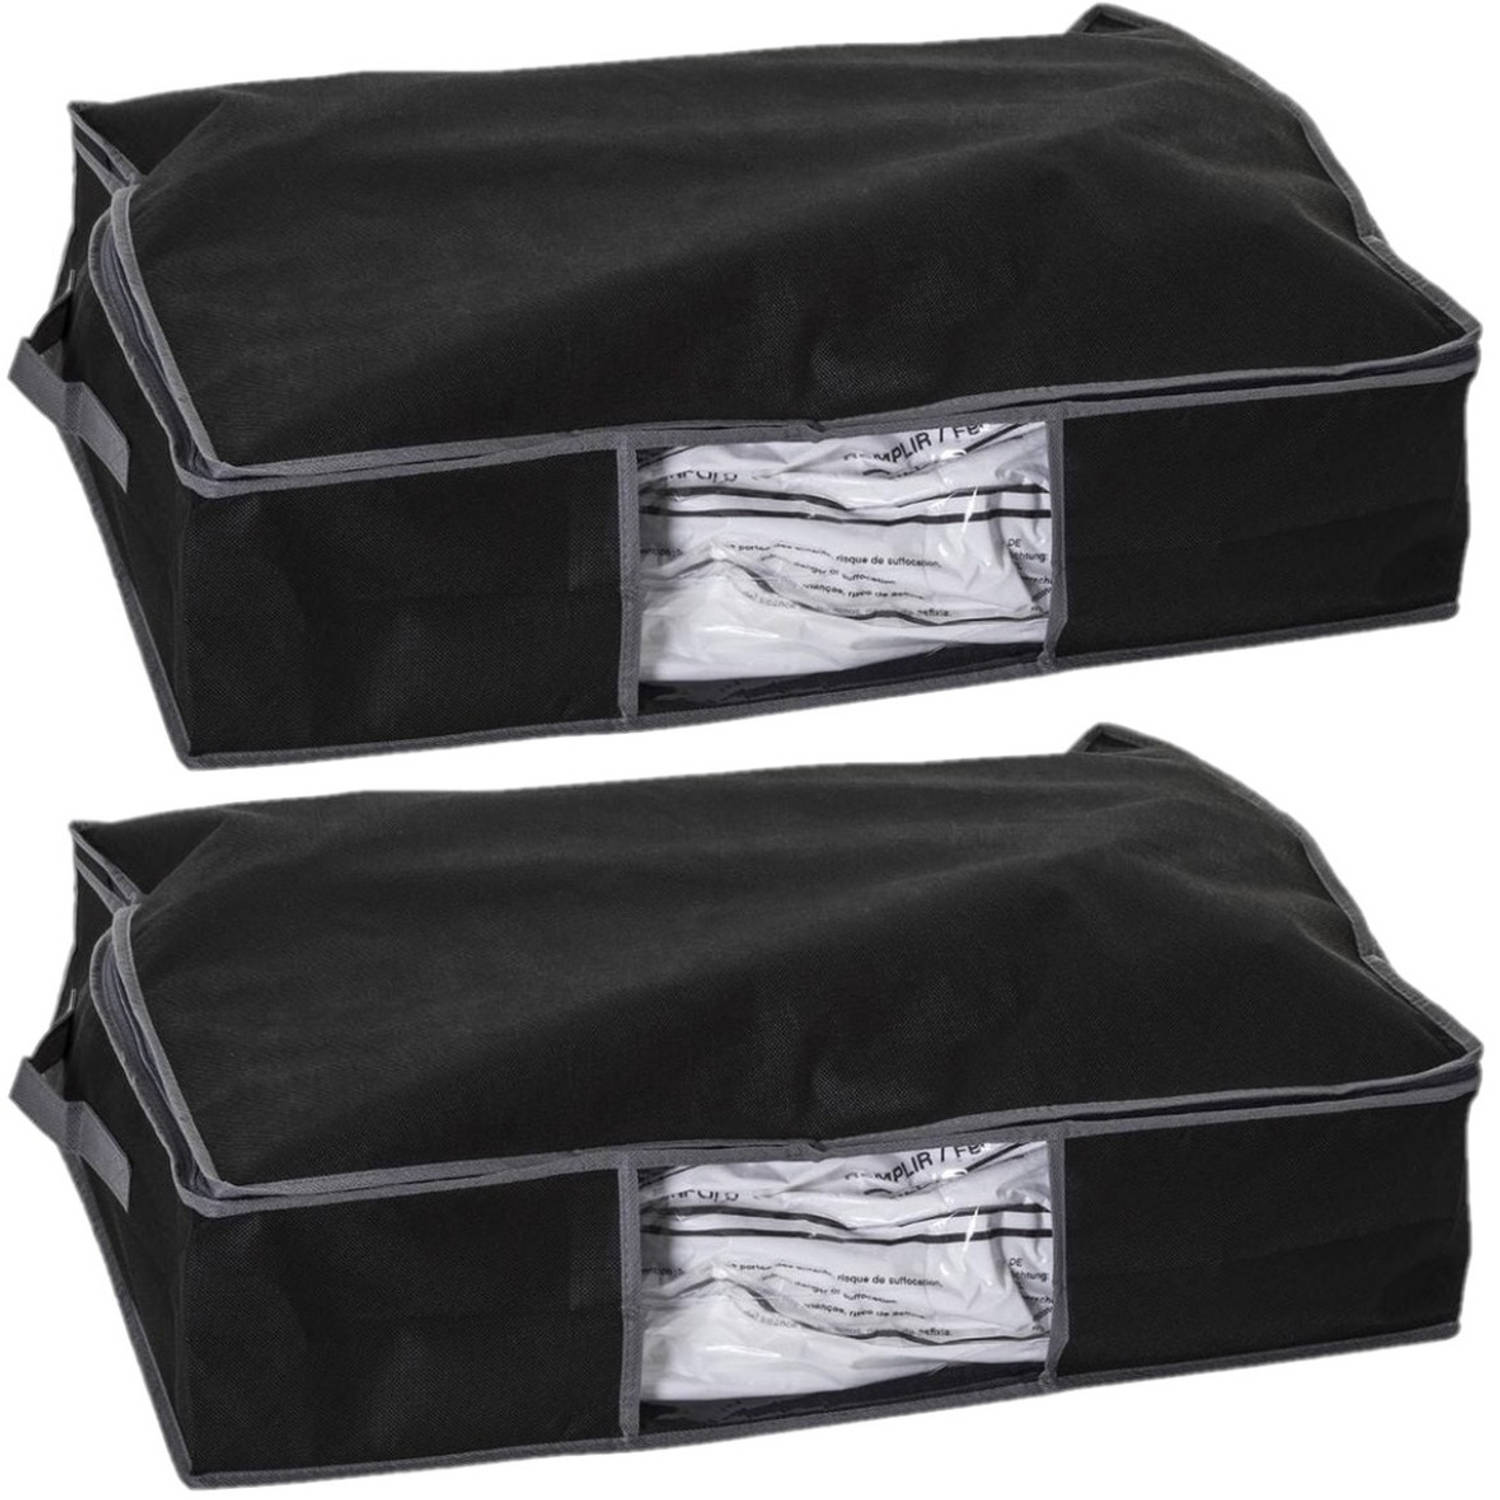 2x Stuks dekbed-kussen opberghoes zwart met vacuumzak 60 x 45 x 15 cm Opberghoezen